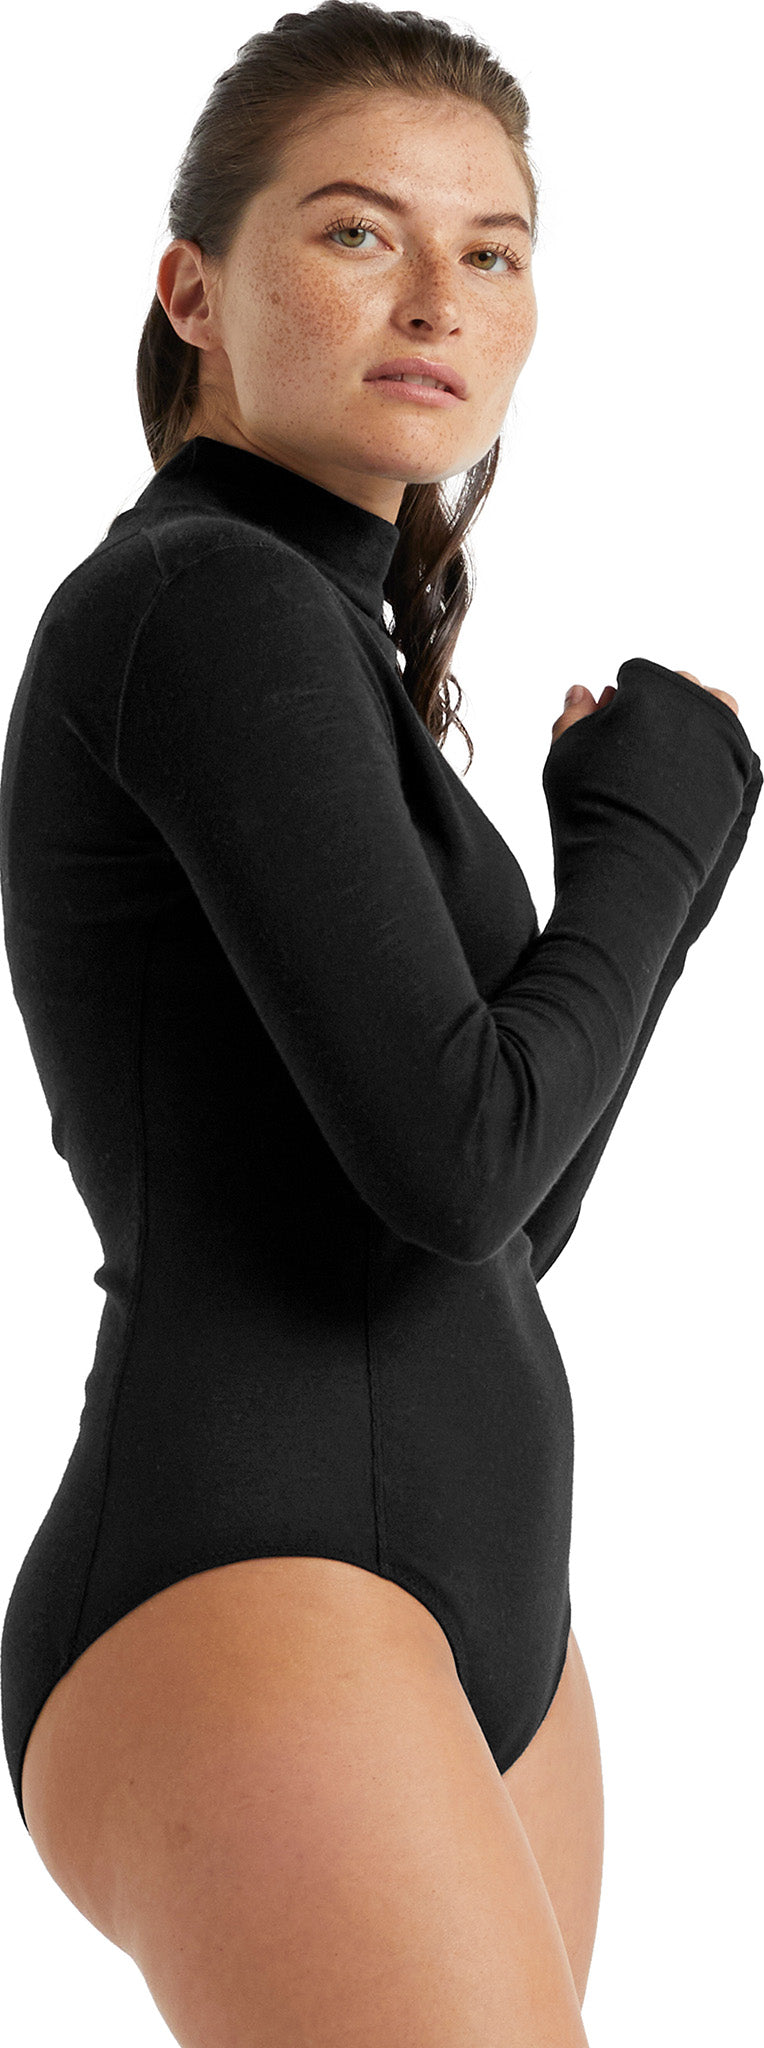 Turtleneck Bodysuit Black Long Sleeve -  Canada